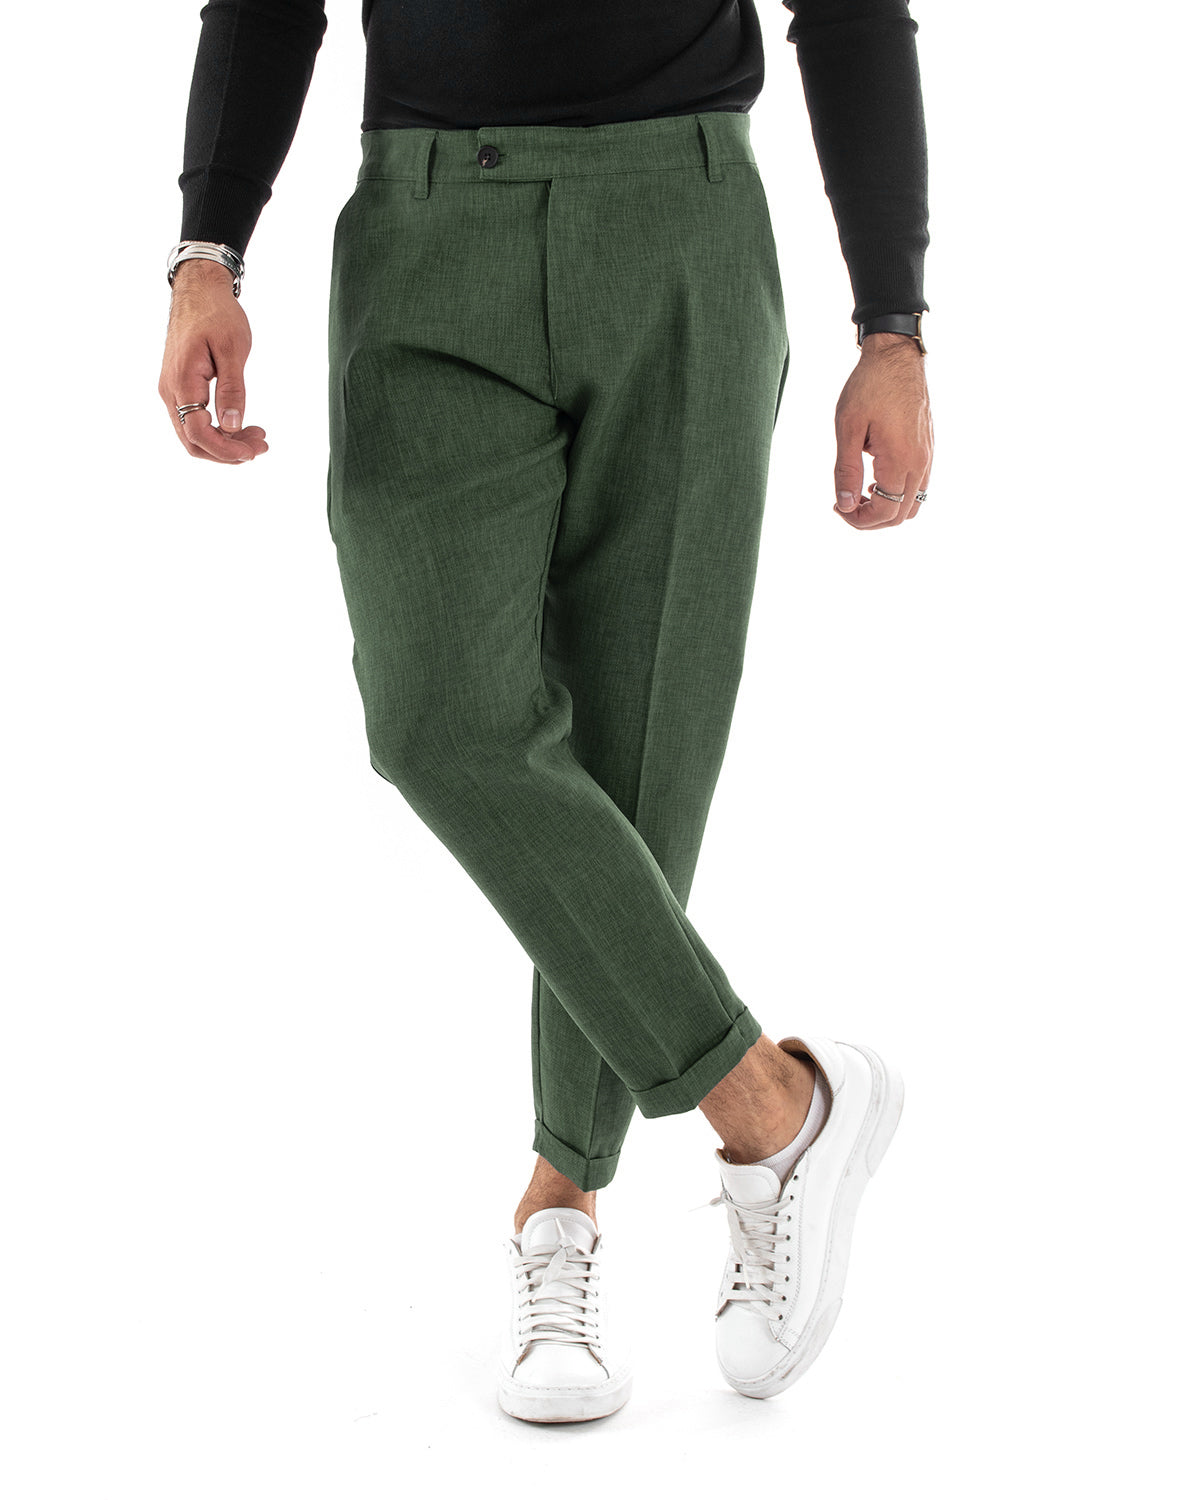 Pantaloni Uomo Tasca America Classico Verde Melangiato Abbottonatura Allungata Casual GIOSAL-P6051A